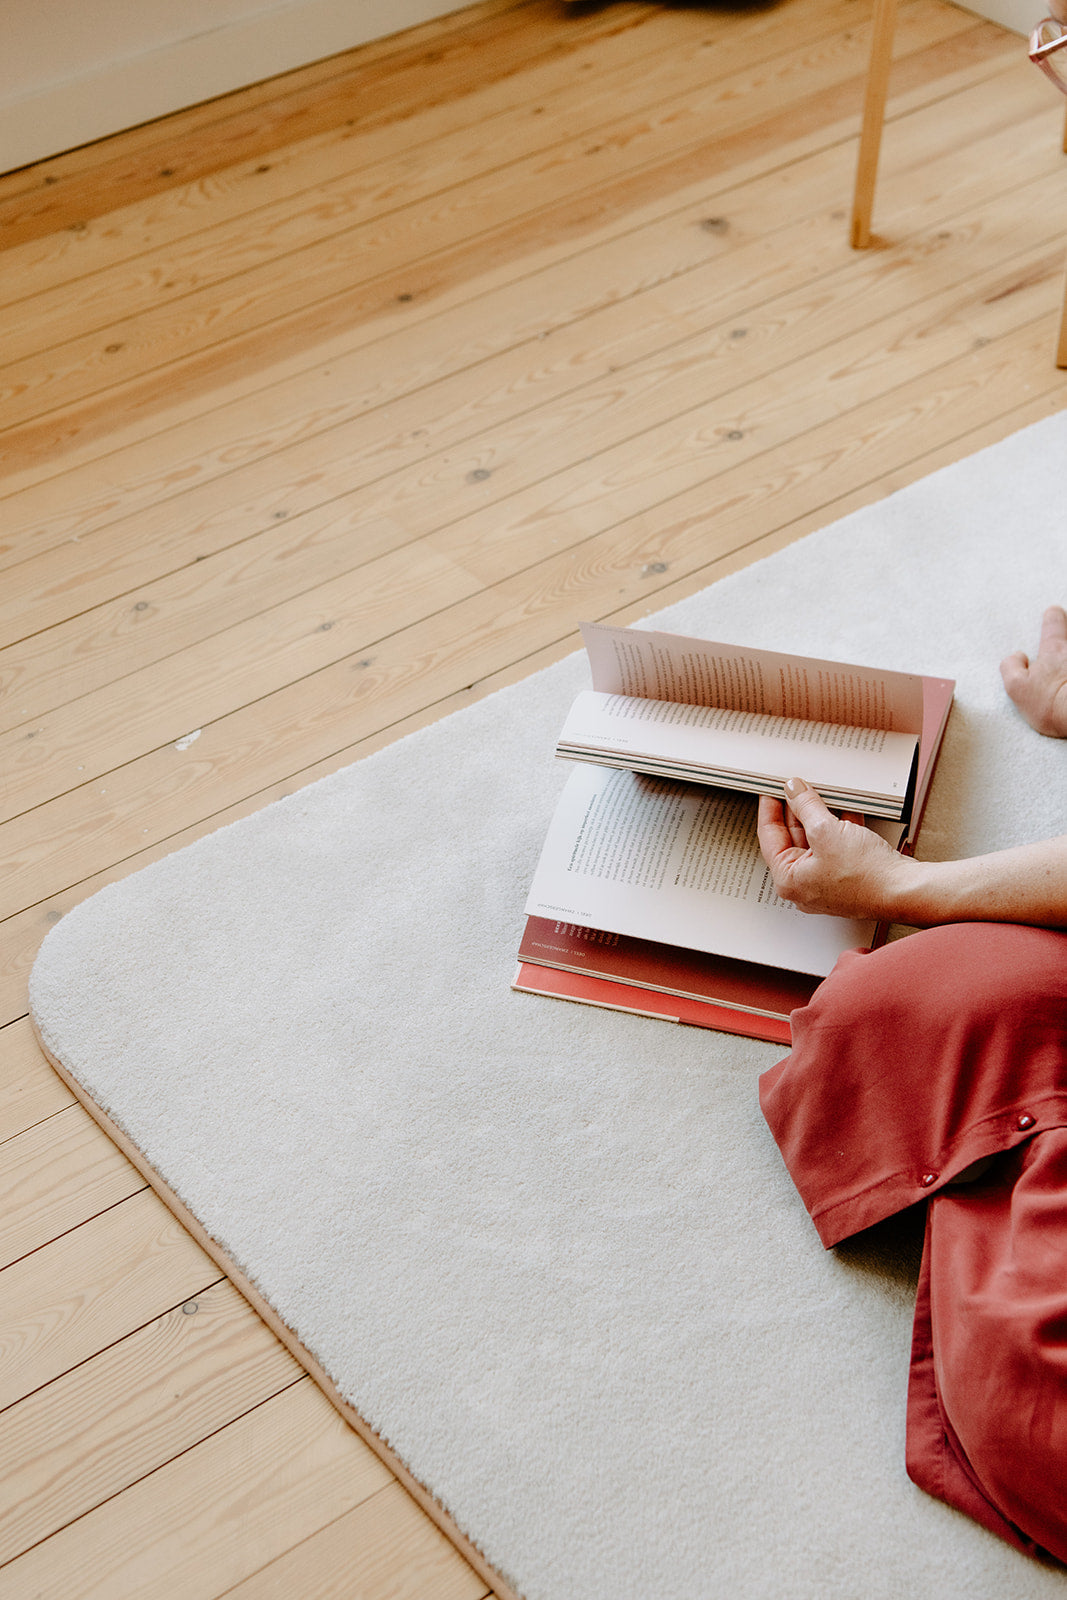 Zacht, ecologisch rechthoekig tapijt met ronde hoeken en blush kleurrand op houten vloer, onder een openliggend boek en deel van een vrouw.